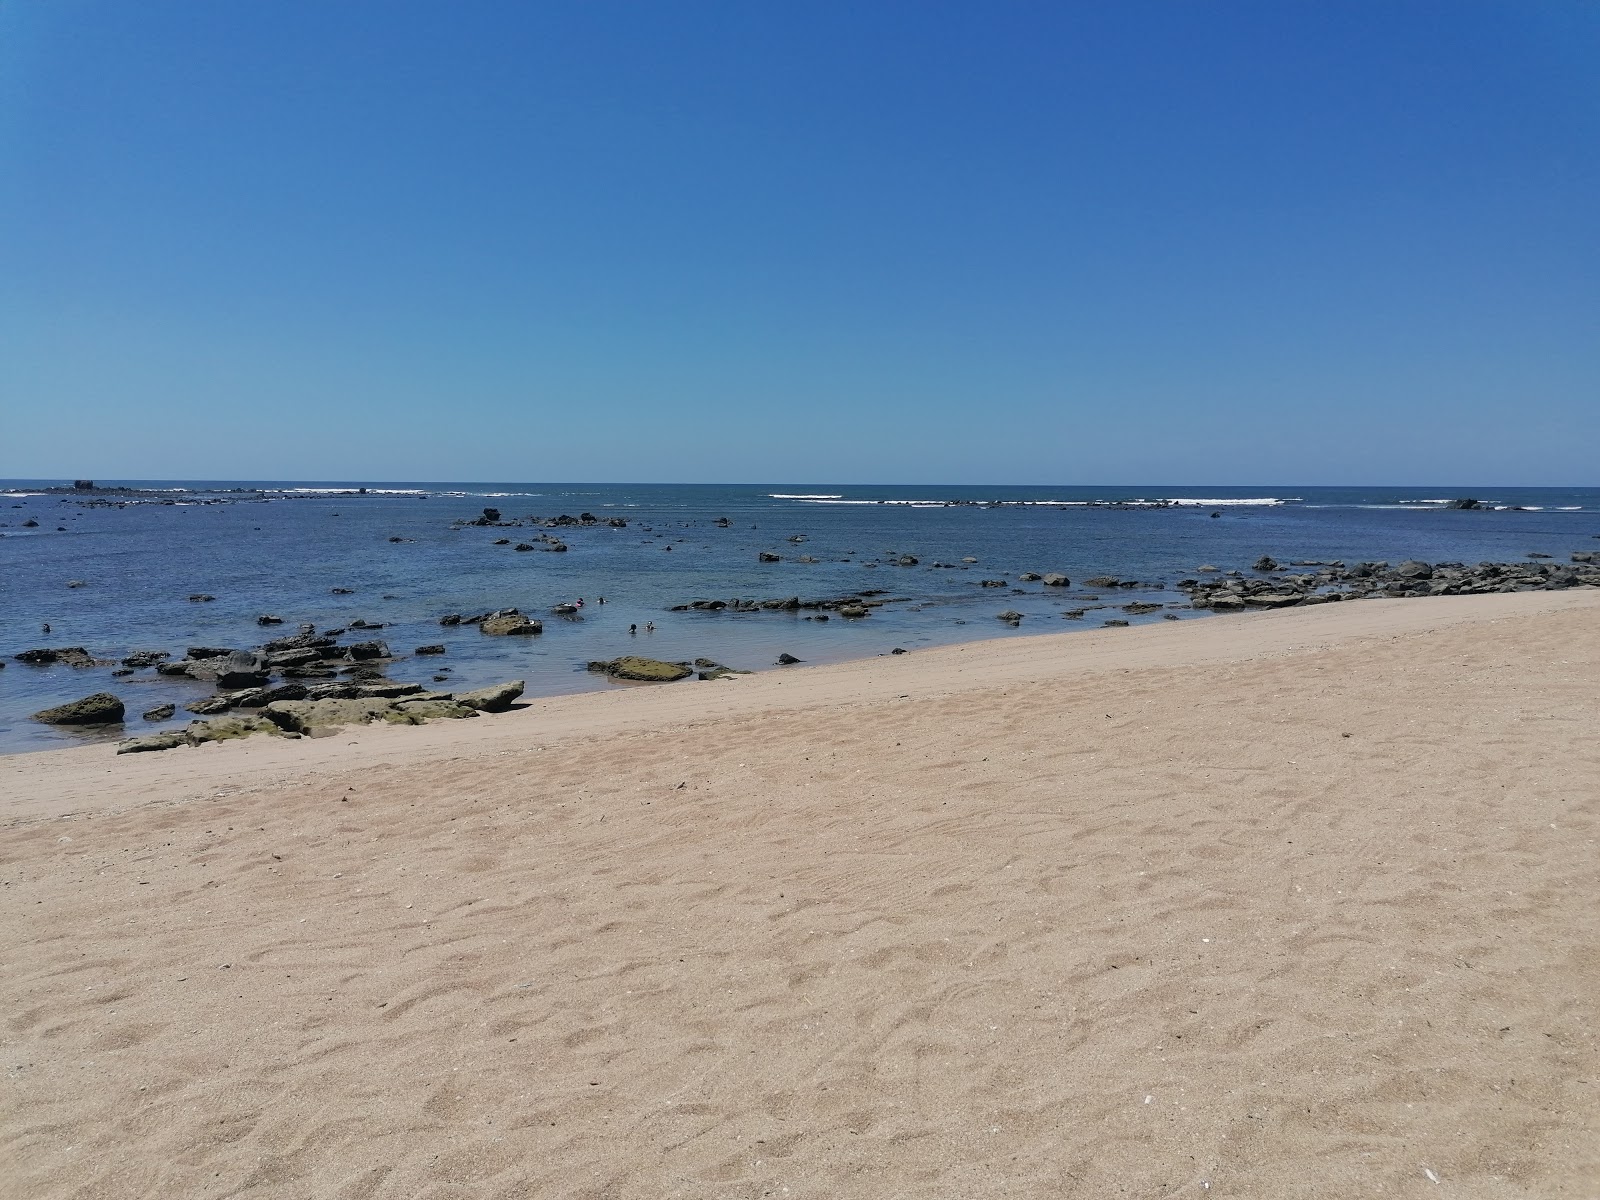 Cobanos beach'in fotoğrafı geniş plaj ile birlikte